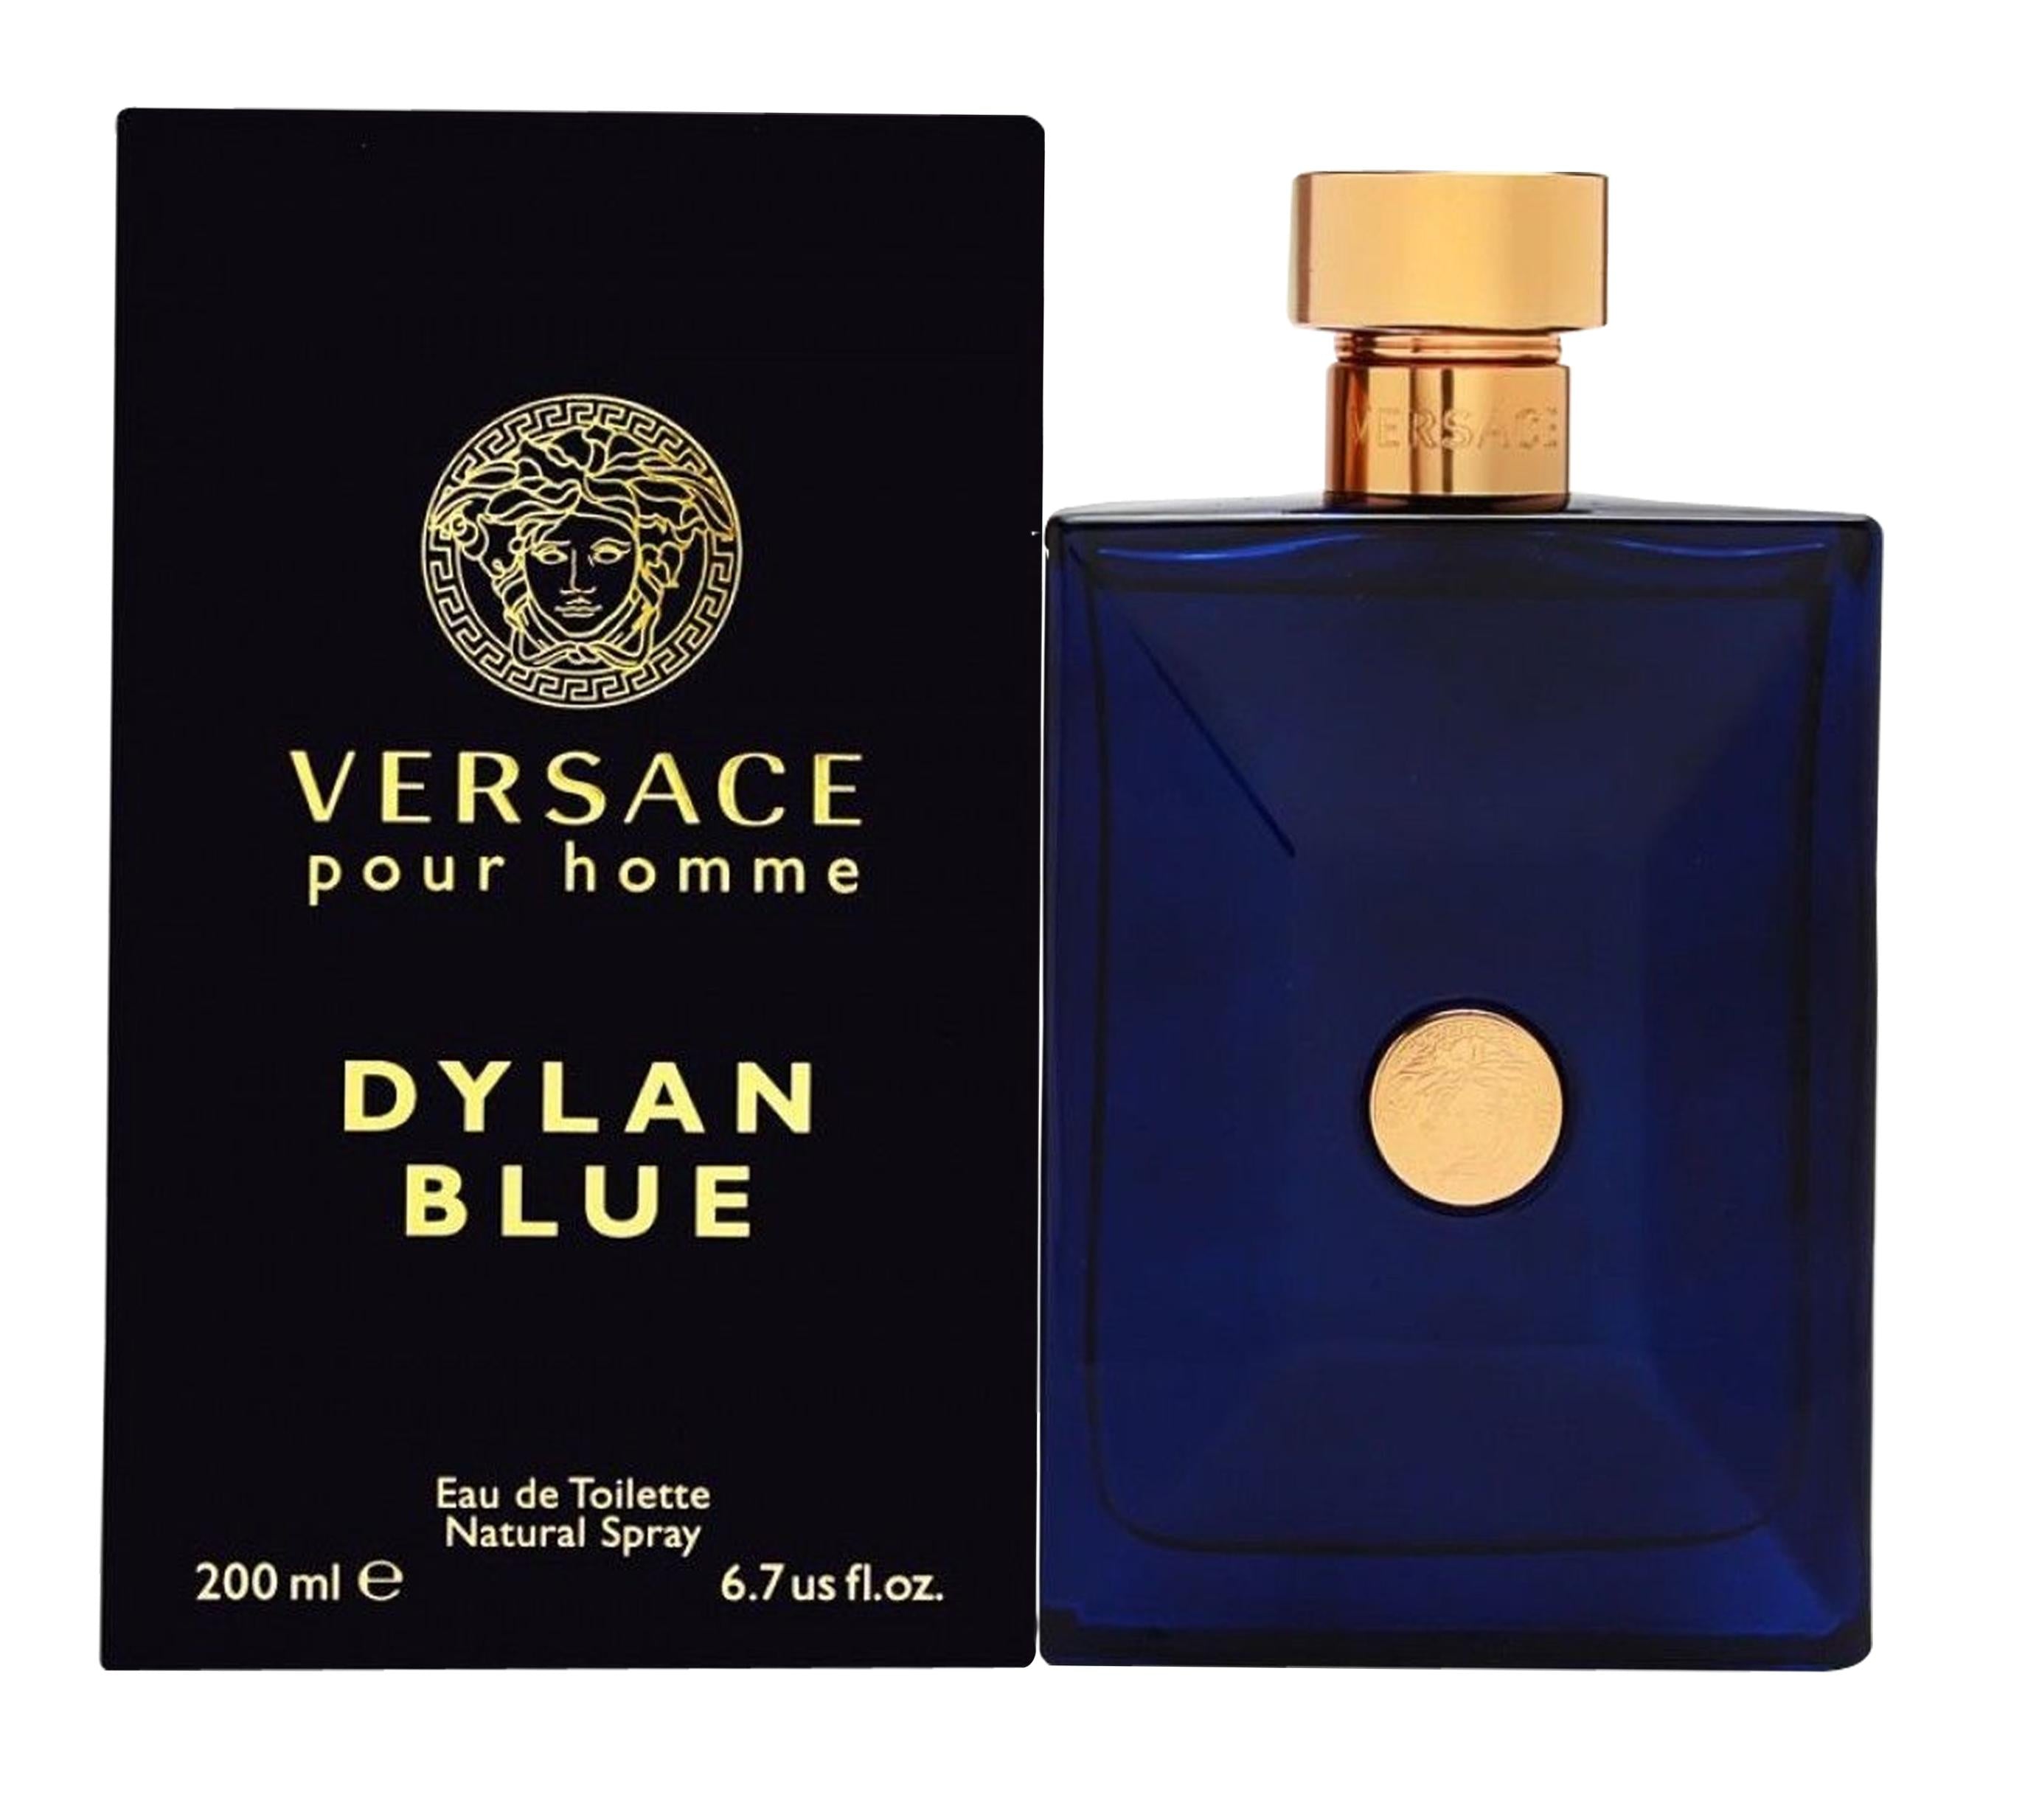 View Versace Pour Homme Dylan Blue Eau de Toilette 200ml Sprej information